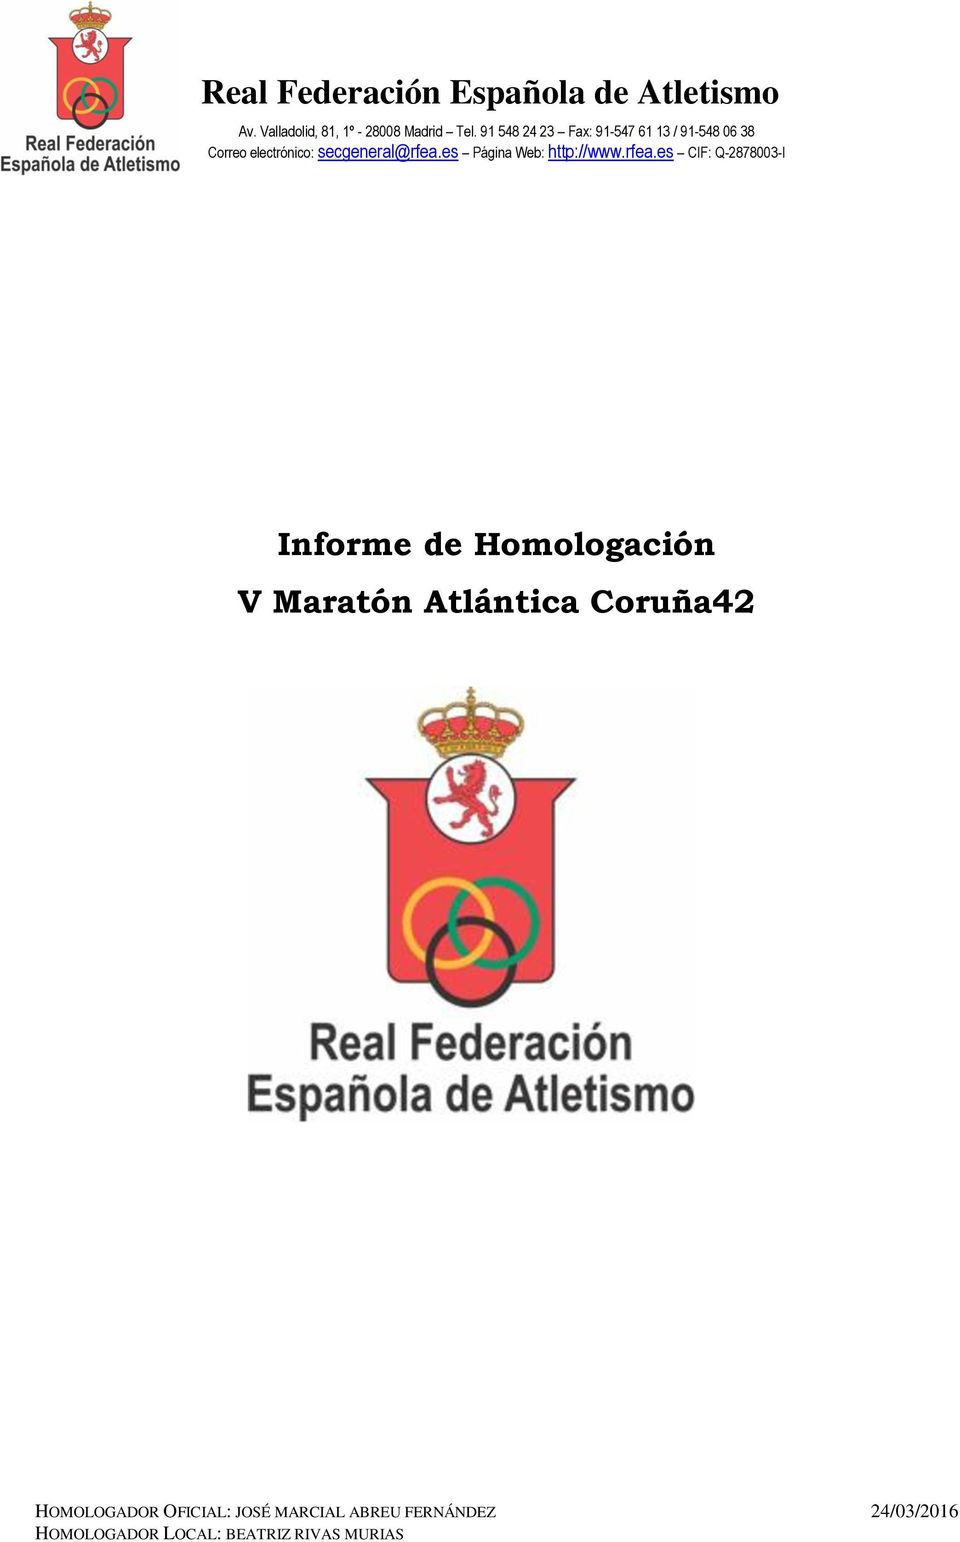 Atlántica Coruña42